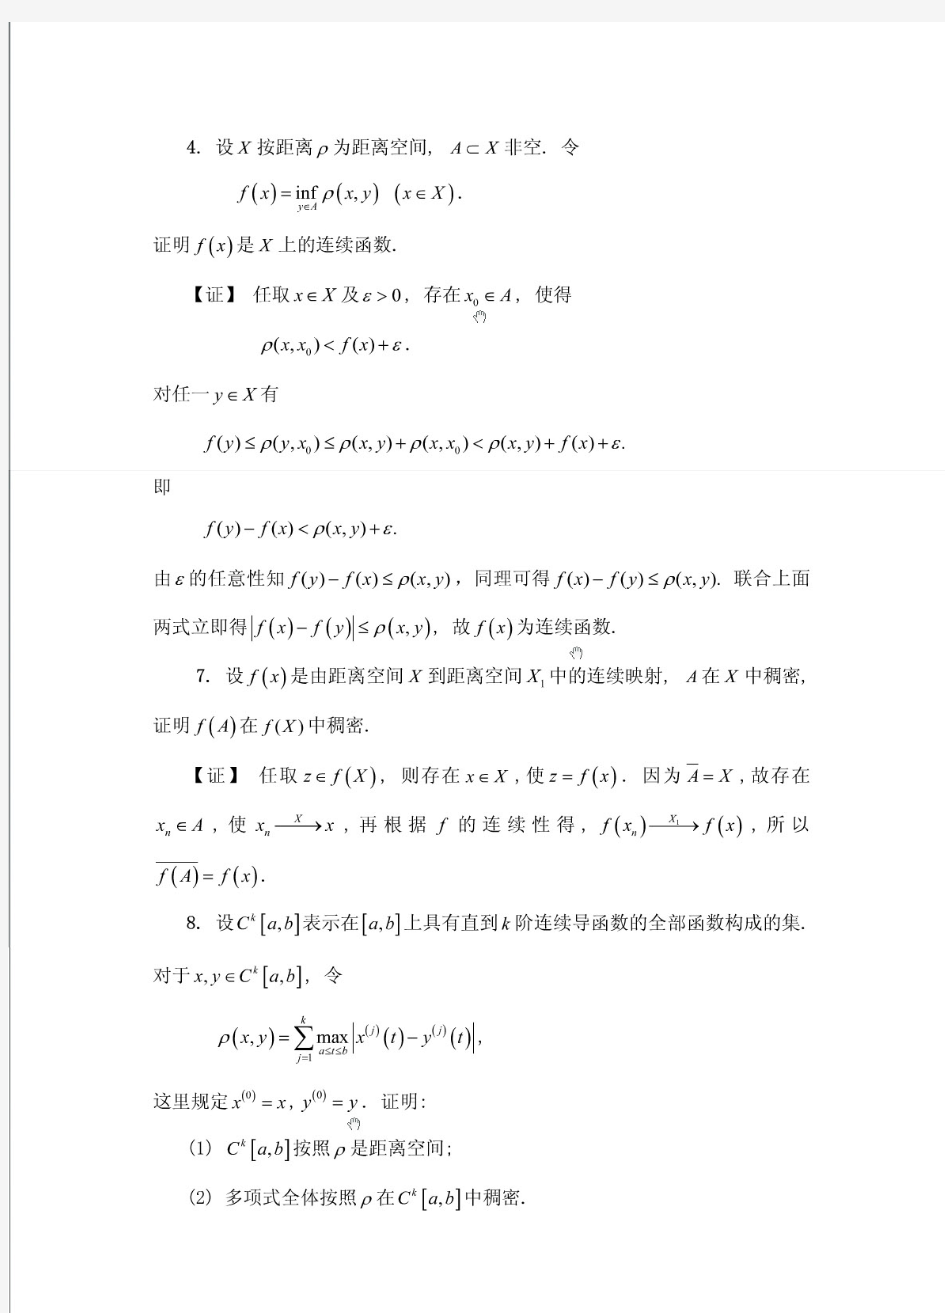 实变函数与泛函分析(郑维行王声望)第四版下册课后习题答案(非完整版)